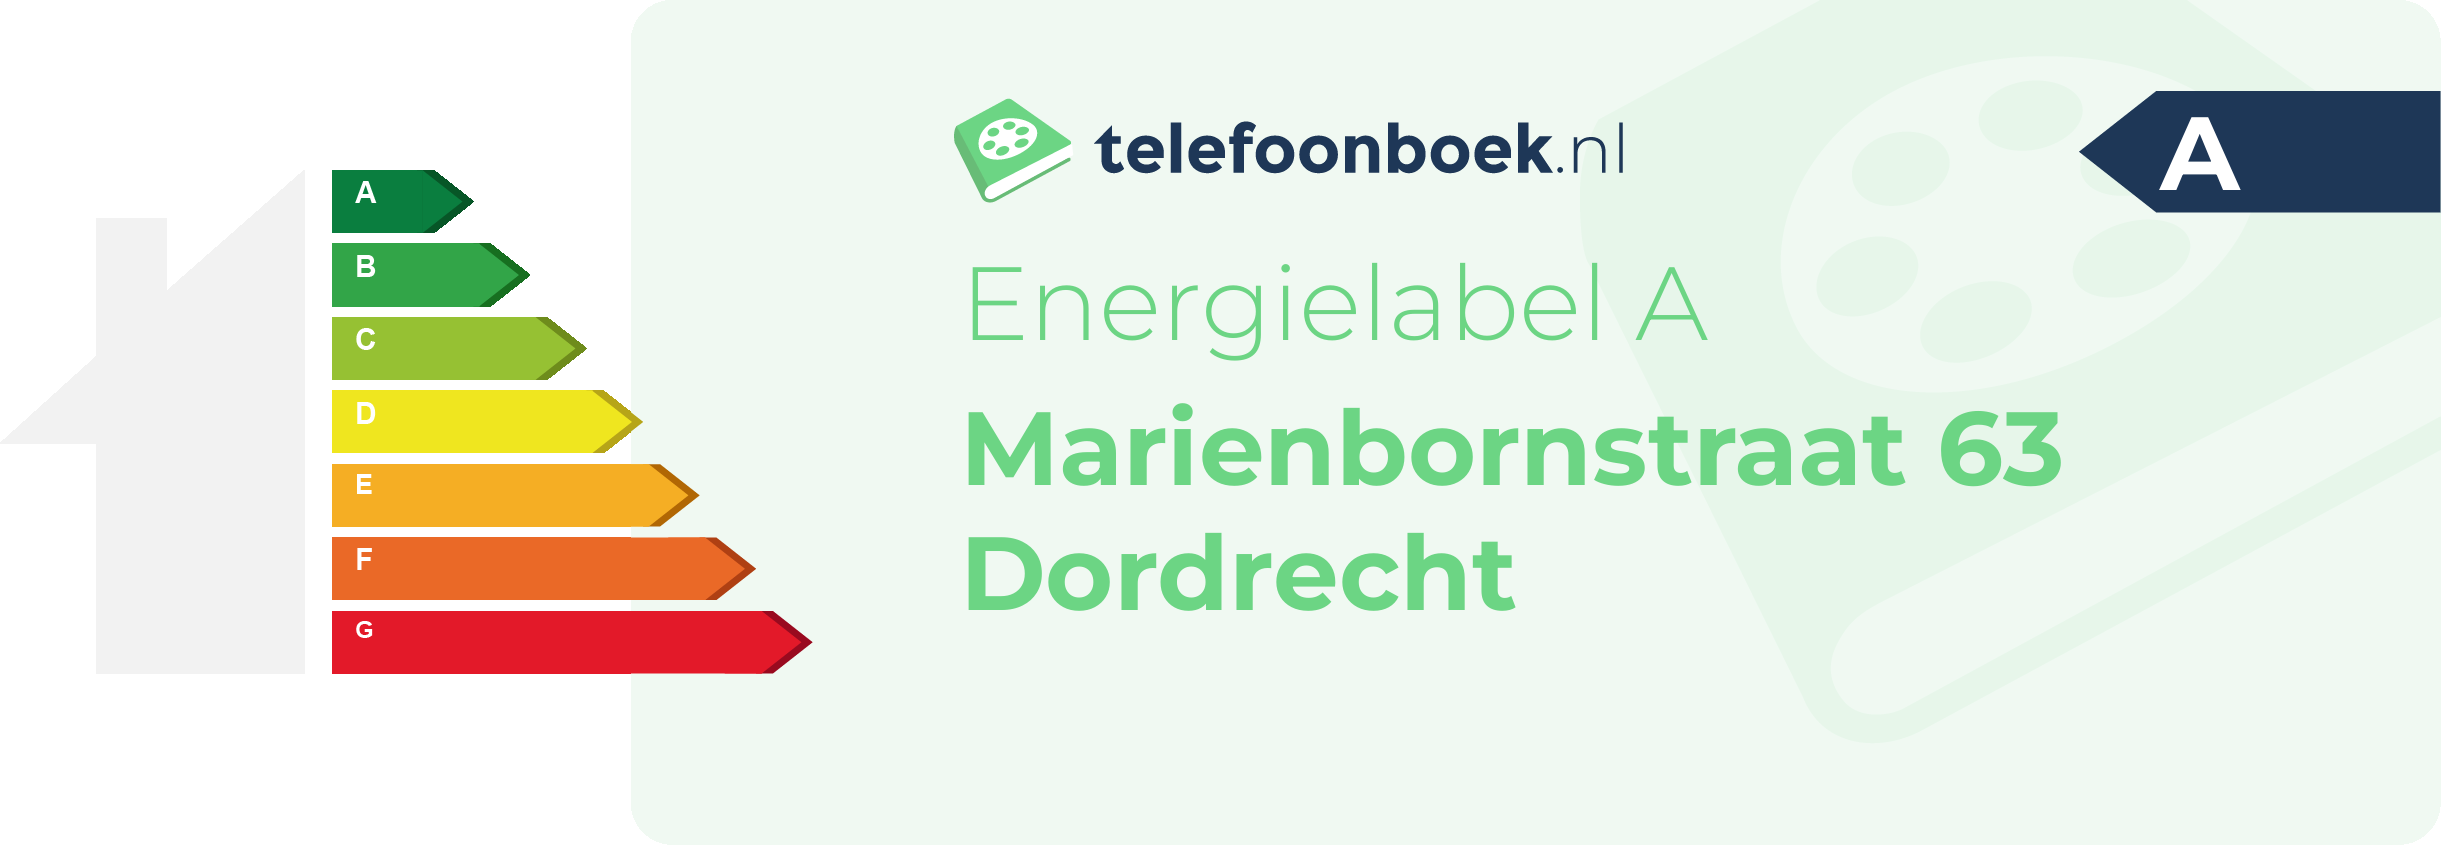 Energielabel Marienbornstraat 63 Dordrecht